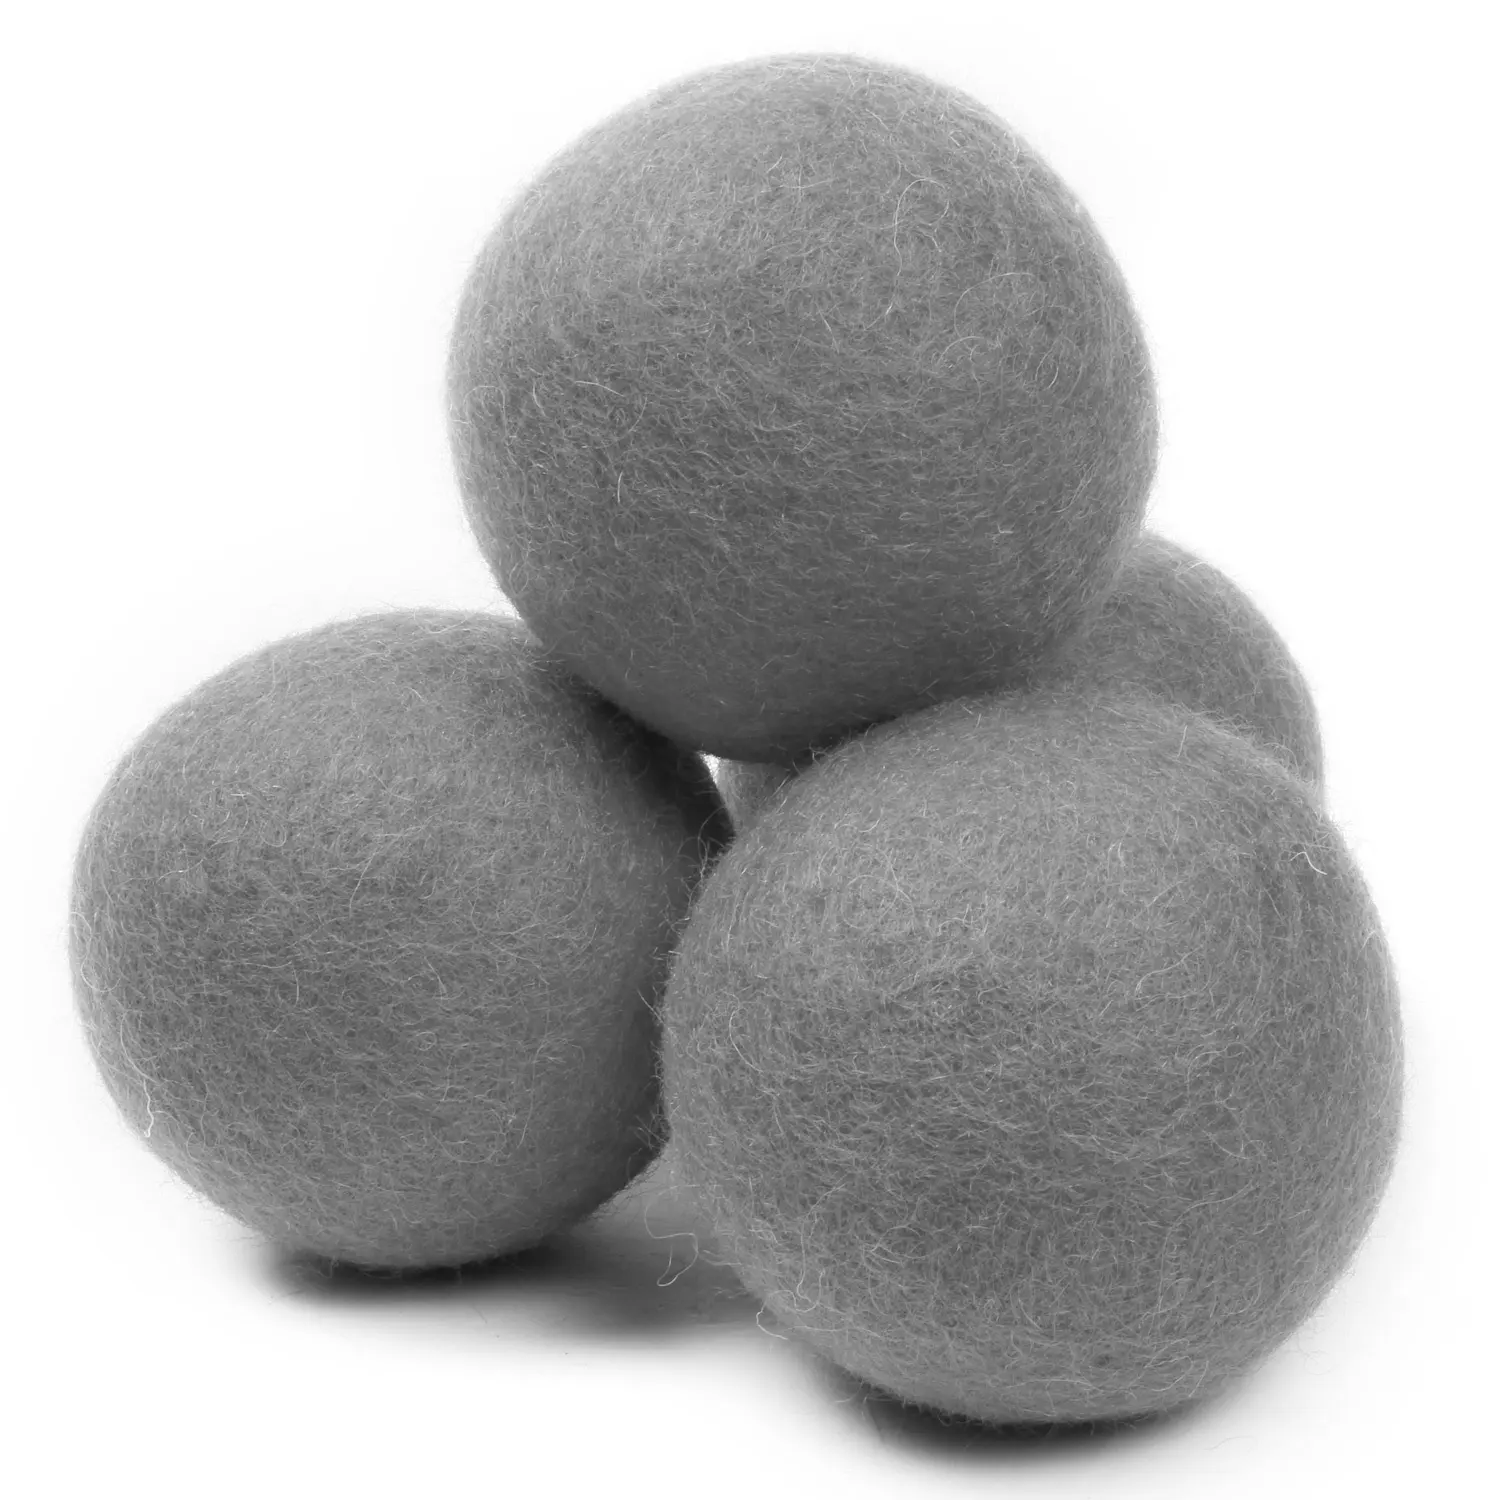 हस्तनिर्मित महसूस किया ड्रायर गेंदों गेंदों-ग्रे एक प्रकार का वृक्ष महसूस किया-प्राकृतिक कपड़े सॉफ़्नर-1000 + भार, एक प्रकार का वृक्ष समय बचाने के लिए और ऊर्जा-महसूस किया गेंदों